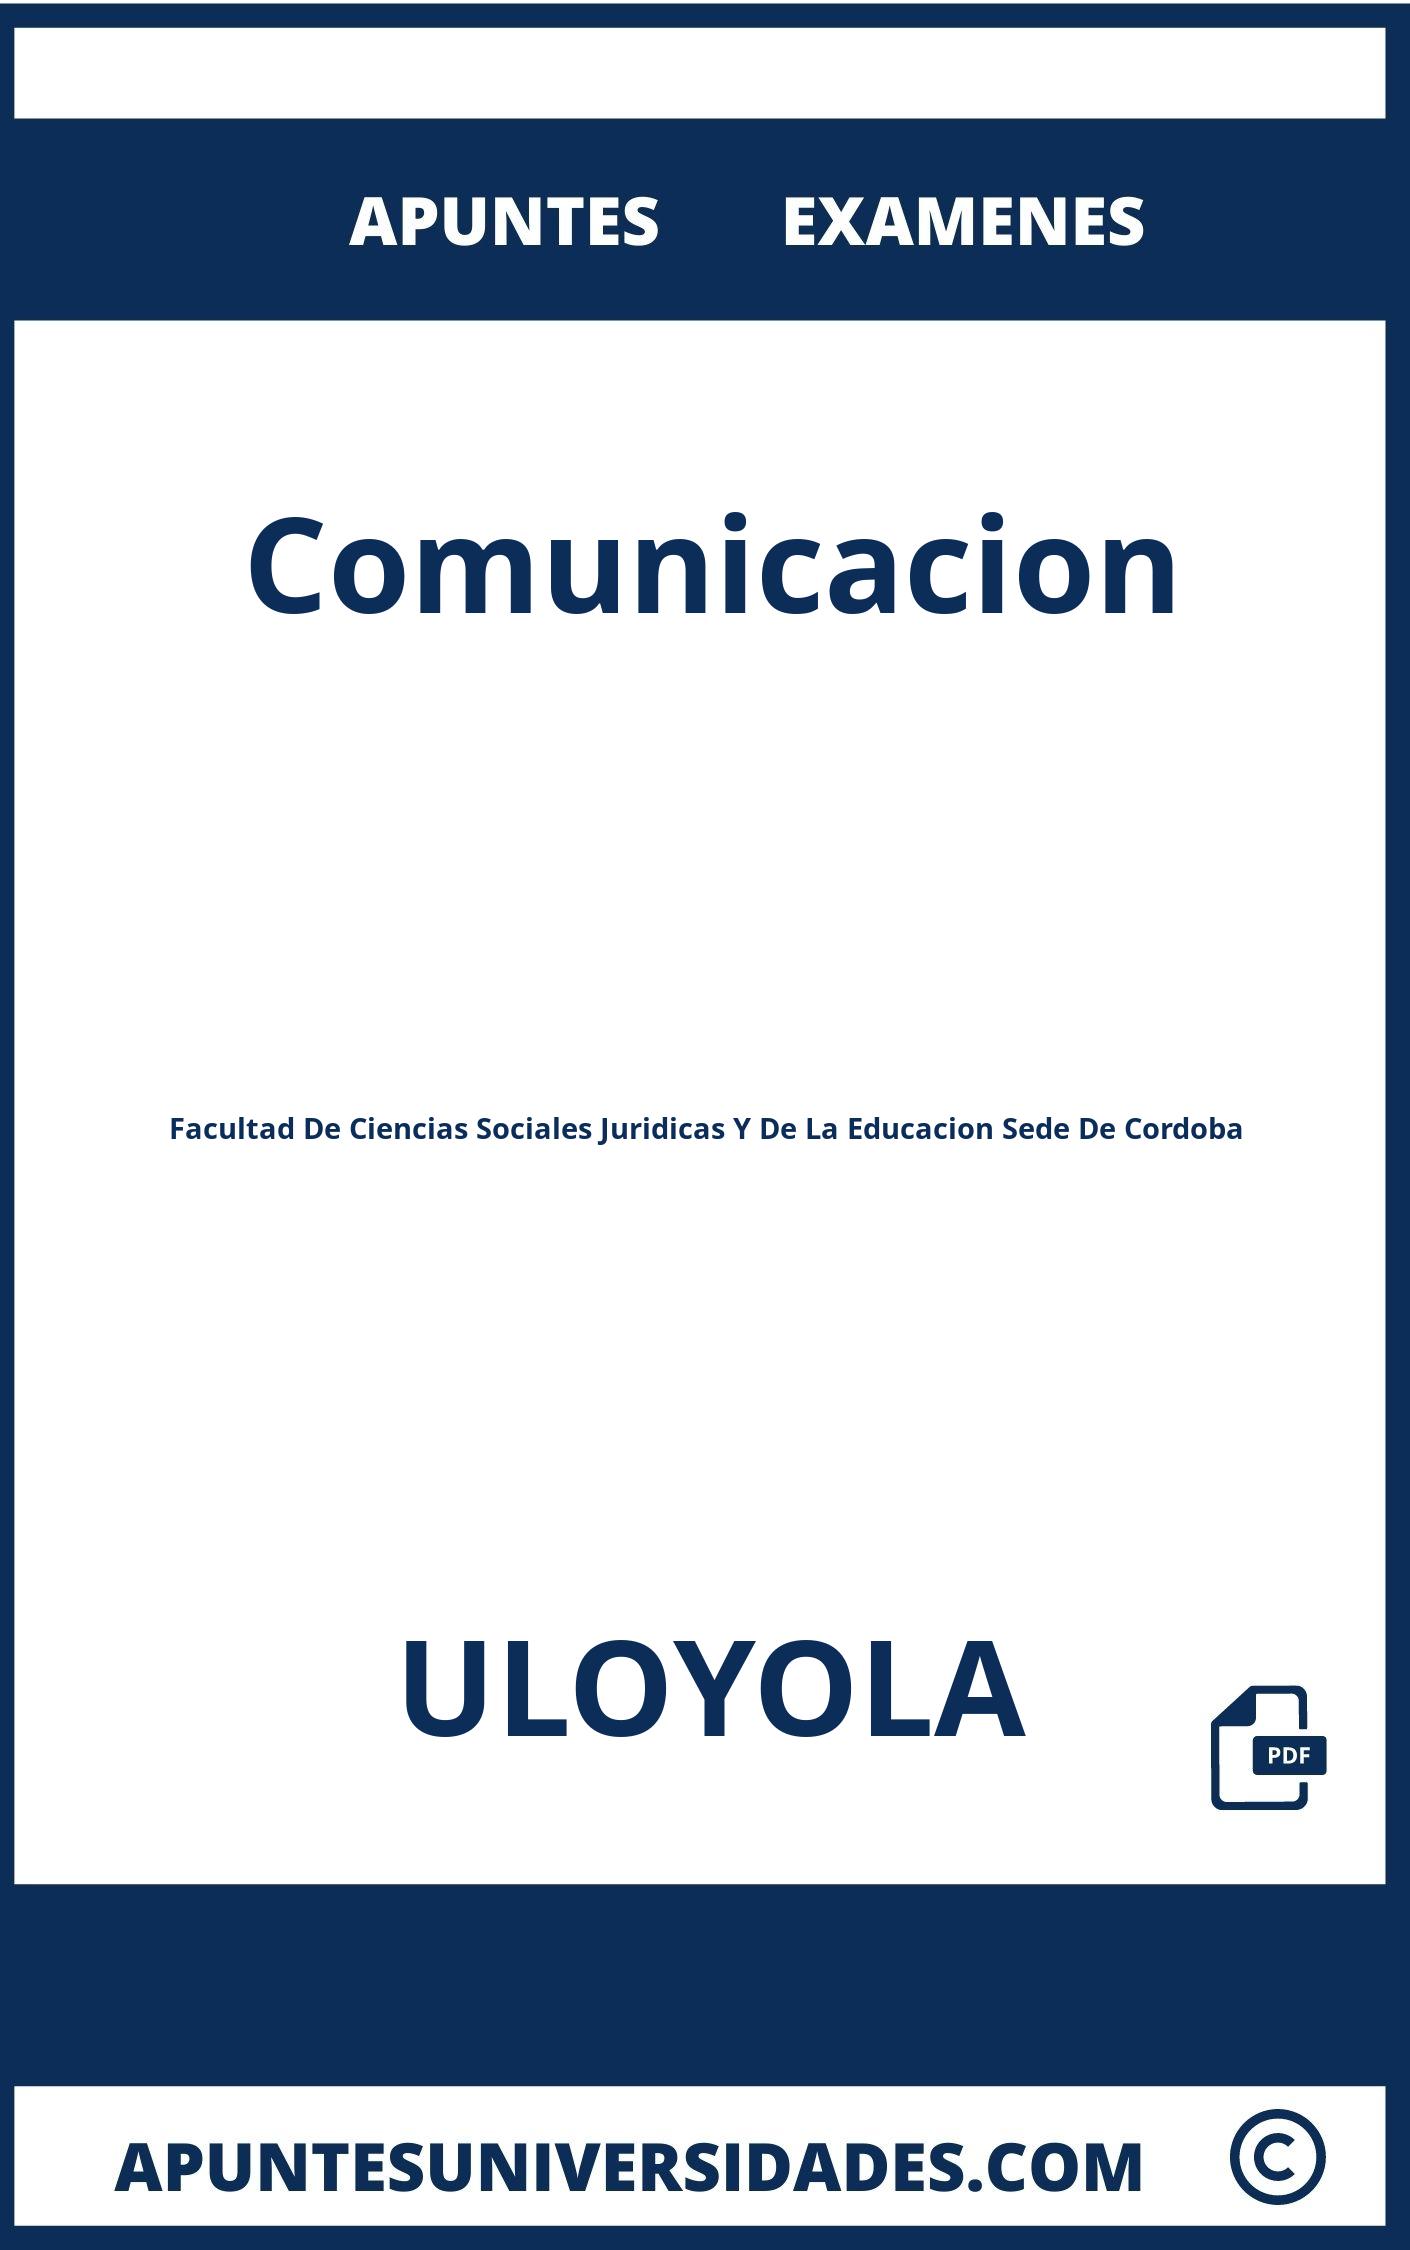 Apuntes y Examenes Comunicacion ULOYOLA